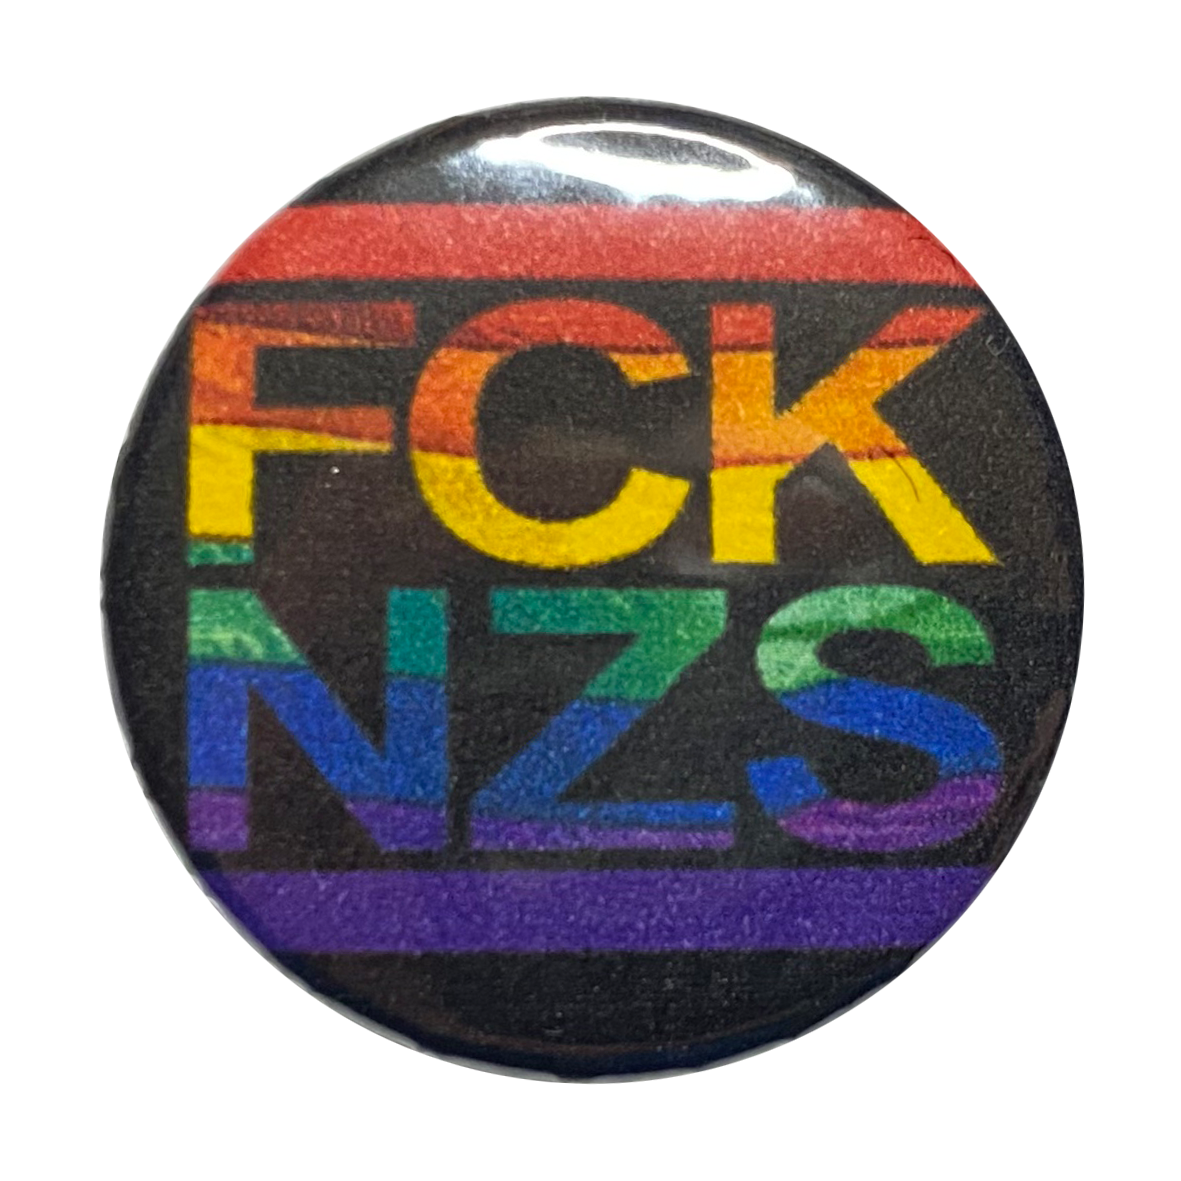 FCKNZS Rainbow Flag - Bundle